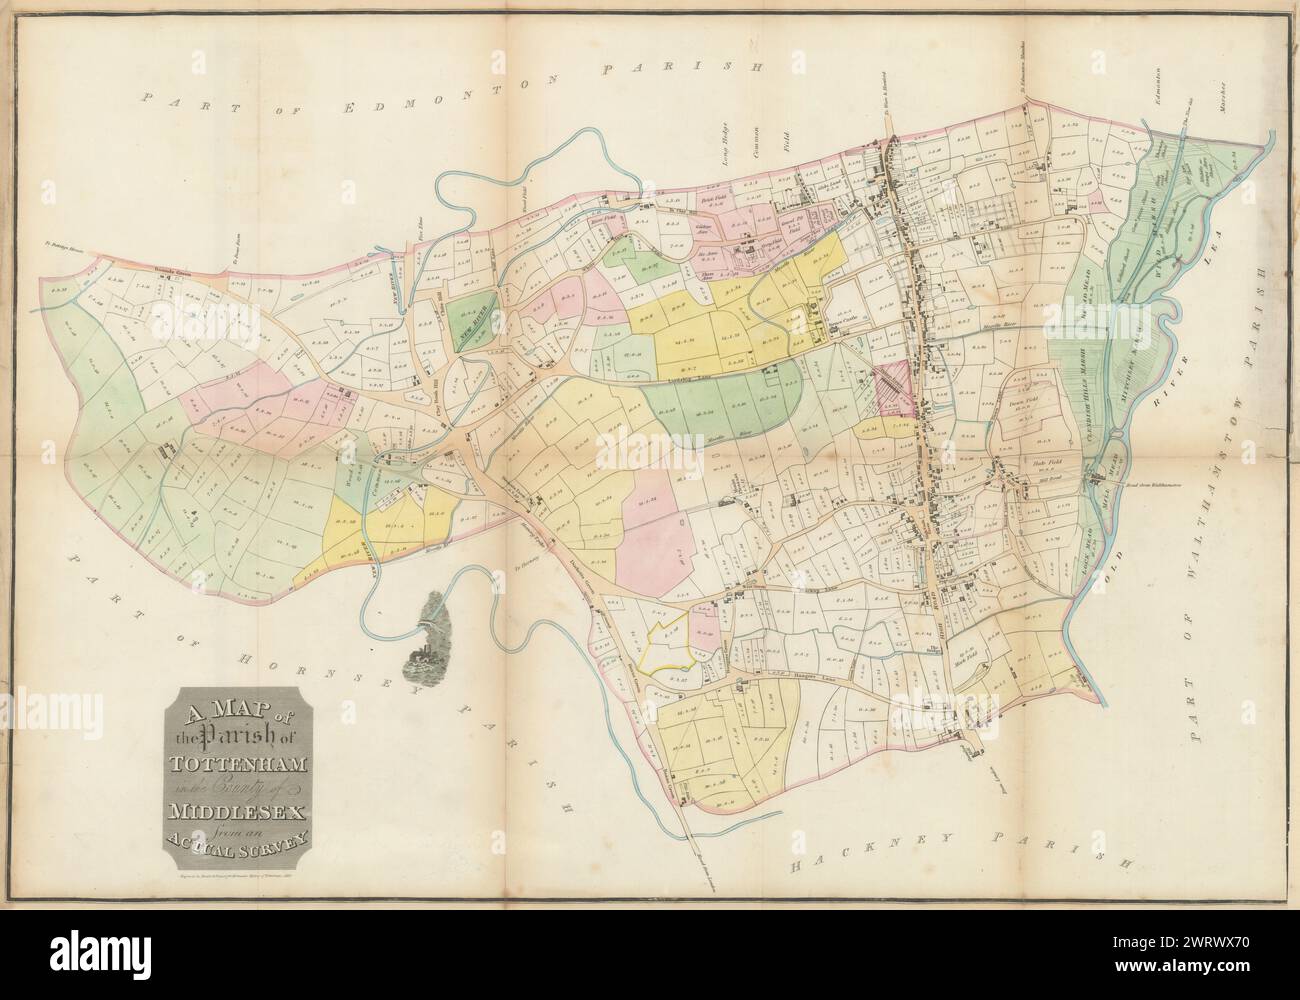 La paroisse de Tottenham dans le comté de Middlesex… Carte de Bowler & Triquet 1818 Banque D'Images